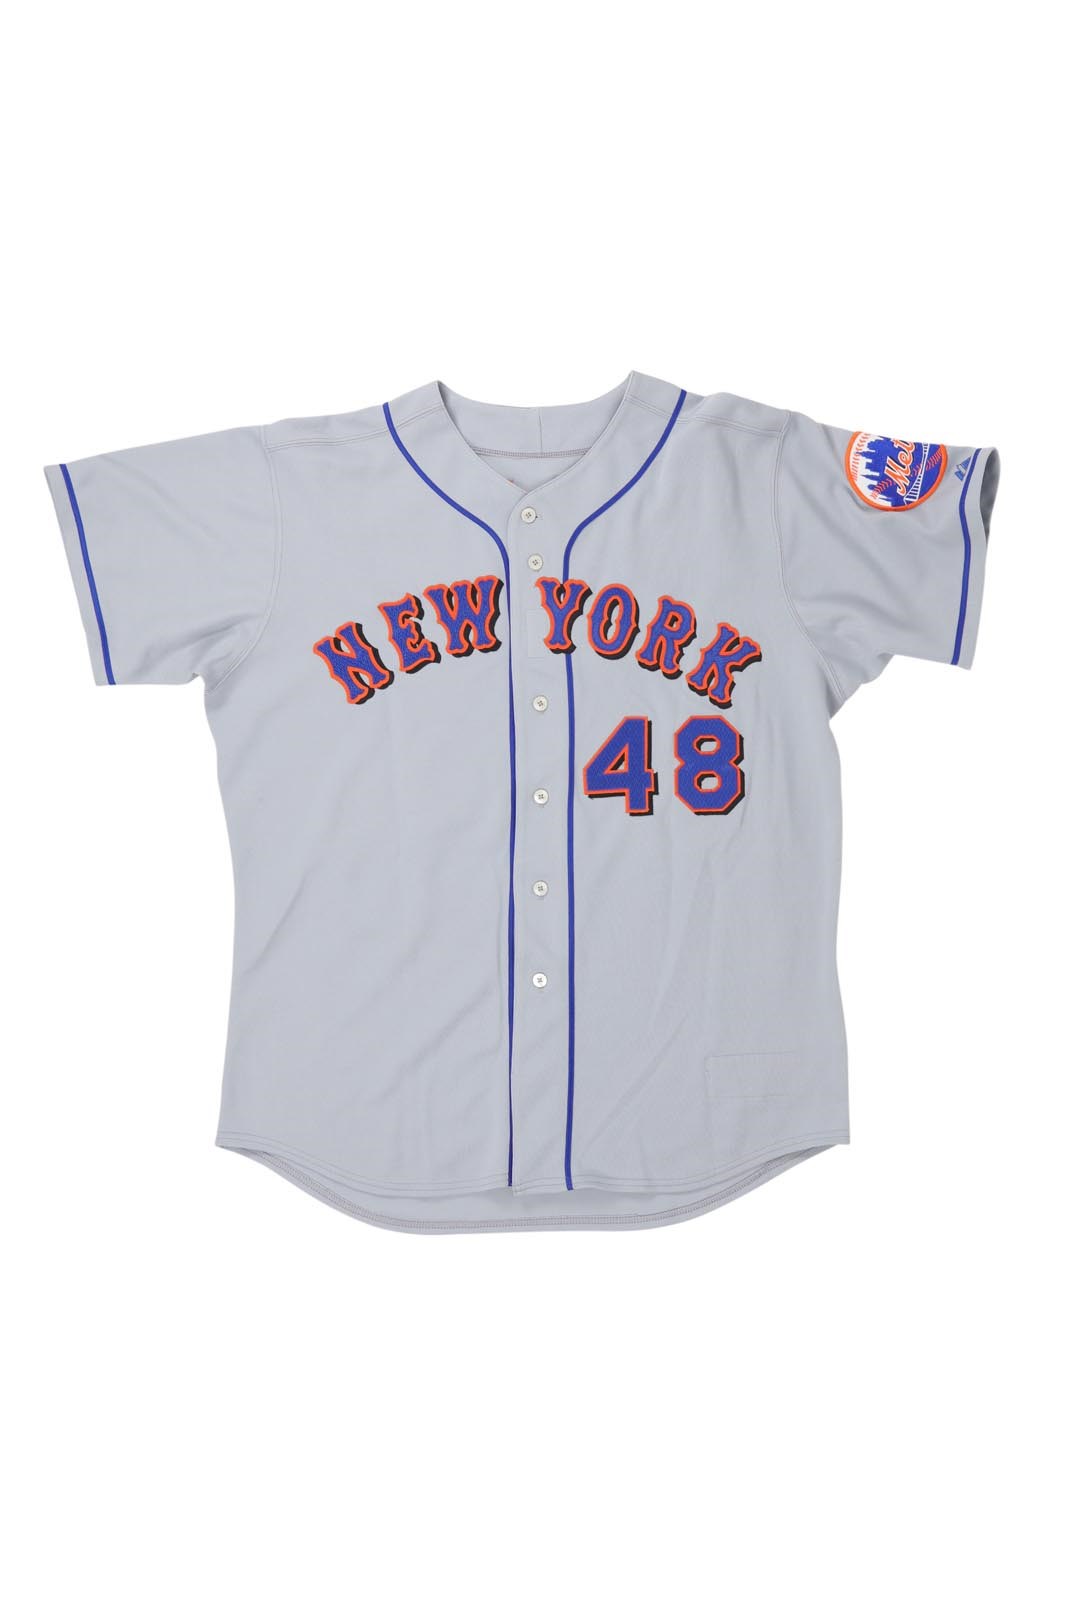 - 2003 Aaron Heilman New York Mets Game Worn Jersey